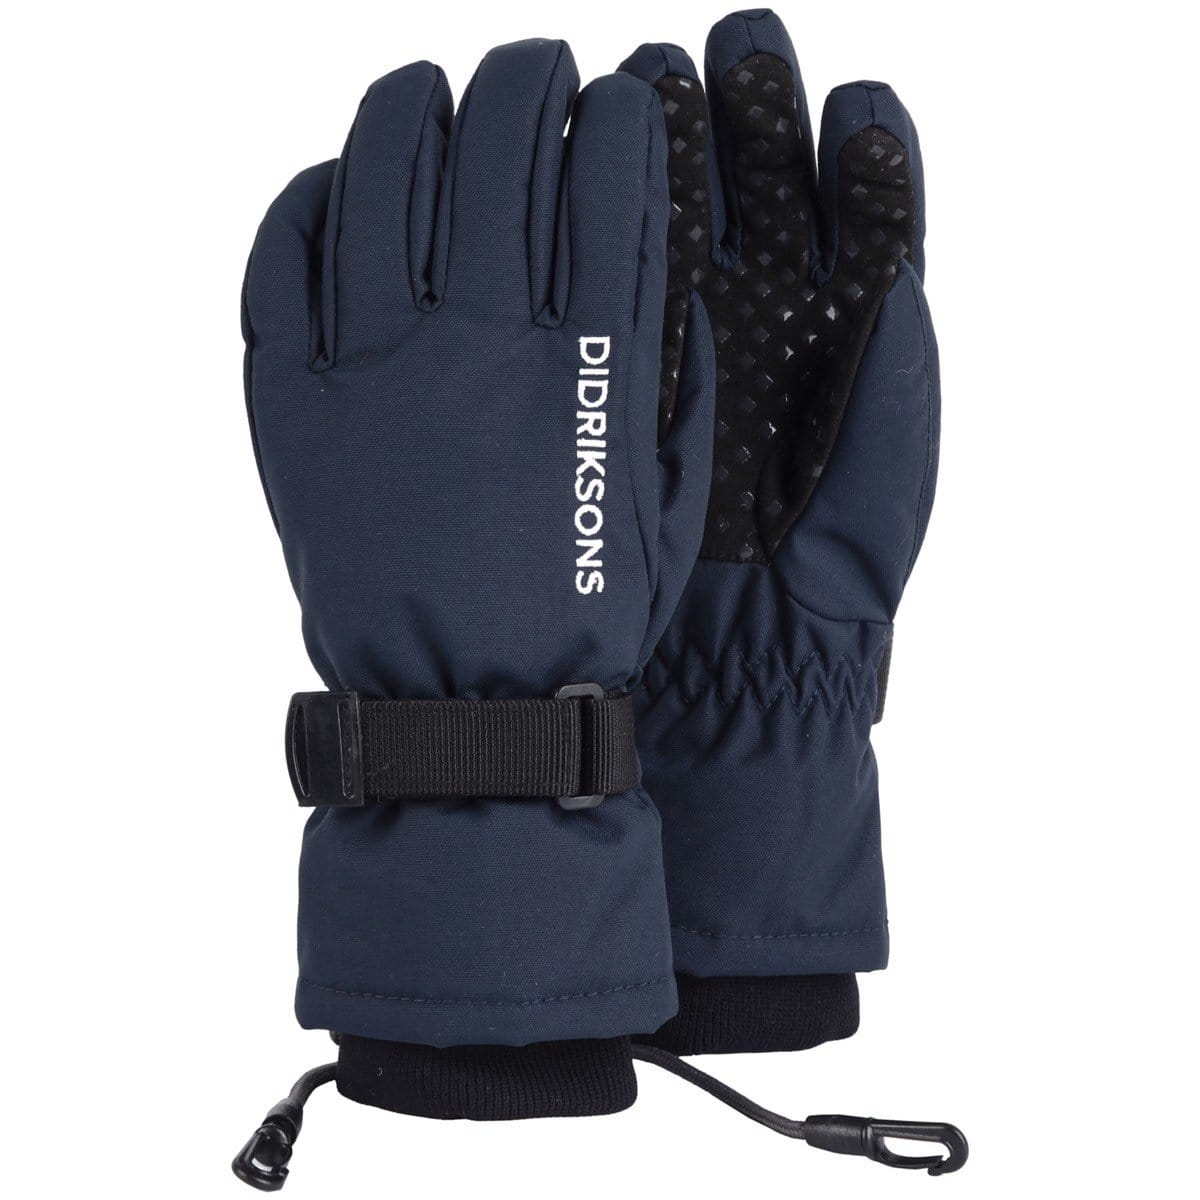 Dětské lyžařské rukavice Didriksons Rukavice BIGGLES FIVE prstové dětské tmavě modrá